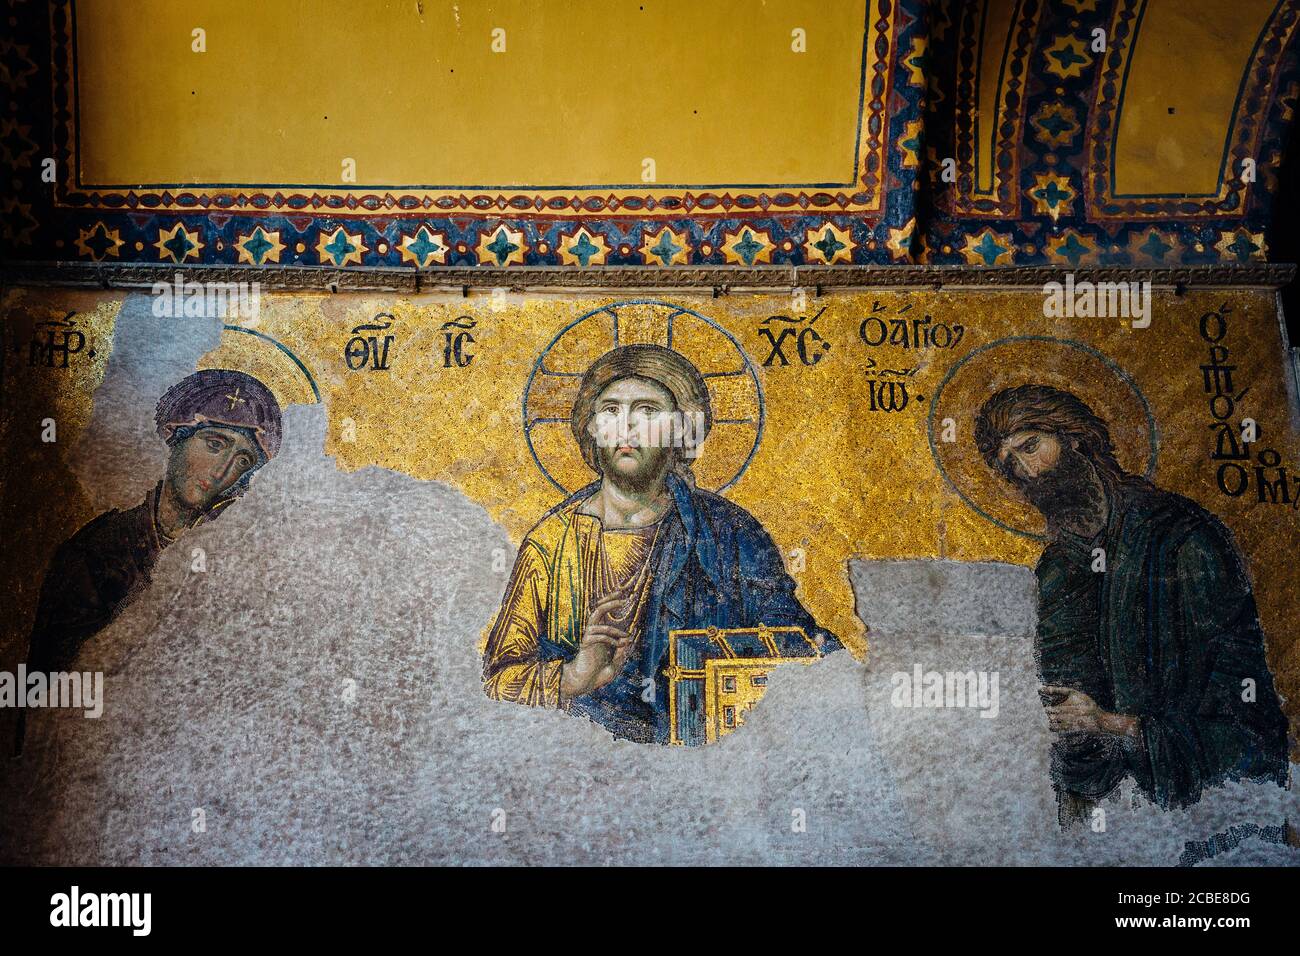 Estambul, Turquía - 14 de agosto de 2018: Un antiguo mosaico cristiano bizantino en una pared del templo de Santa Sofía en Estambul, Turquía. Foto de stock